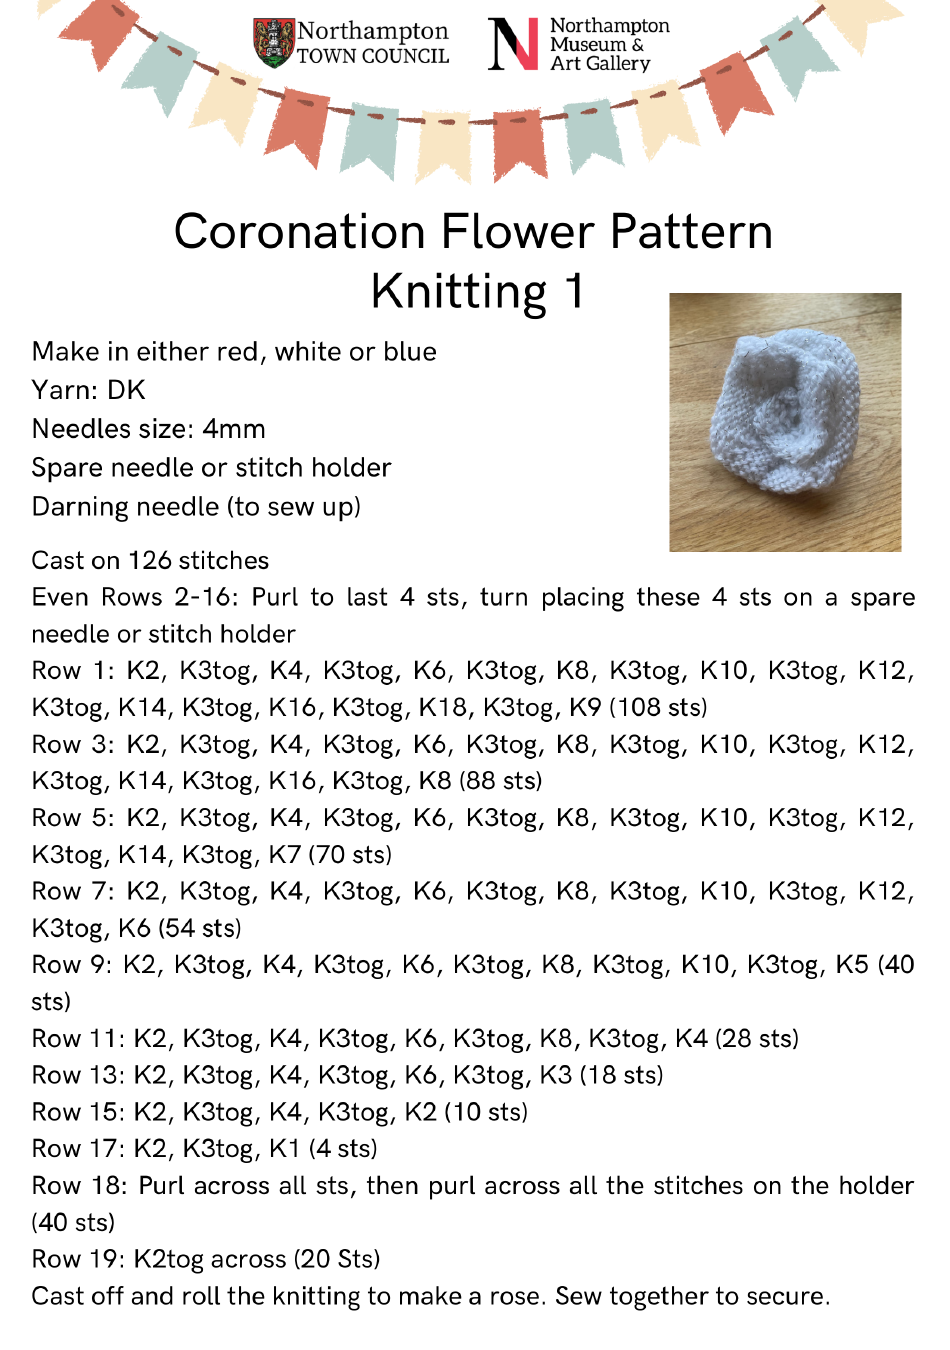 Coronation Flower Knitting Pattern, Page 1